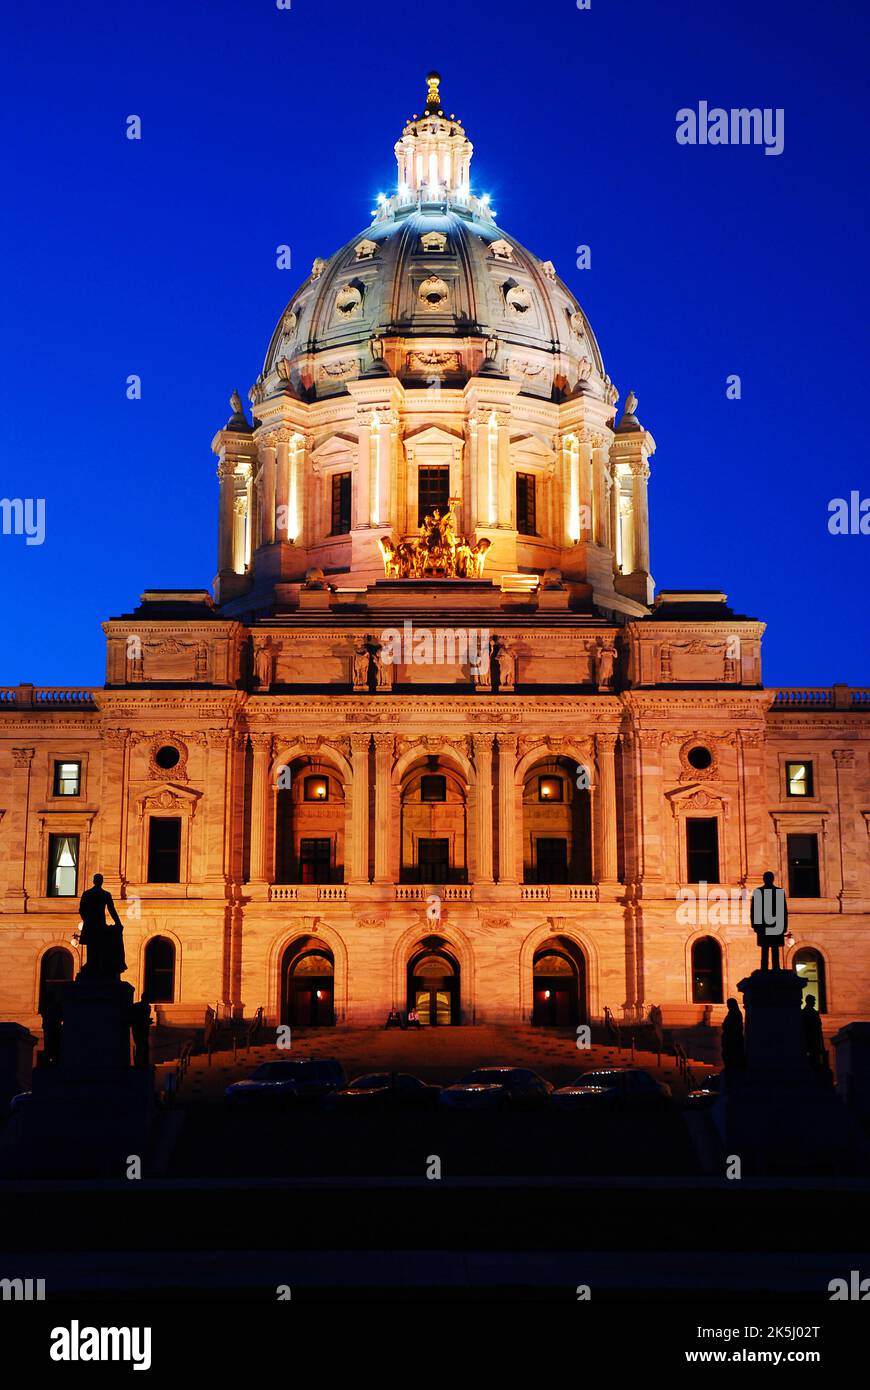 El capitolio del estado de Minnesota, en St Paul, hogar del gobierno y de la política del estado, se ilumina por la noche Foto de stock